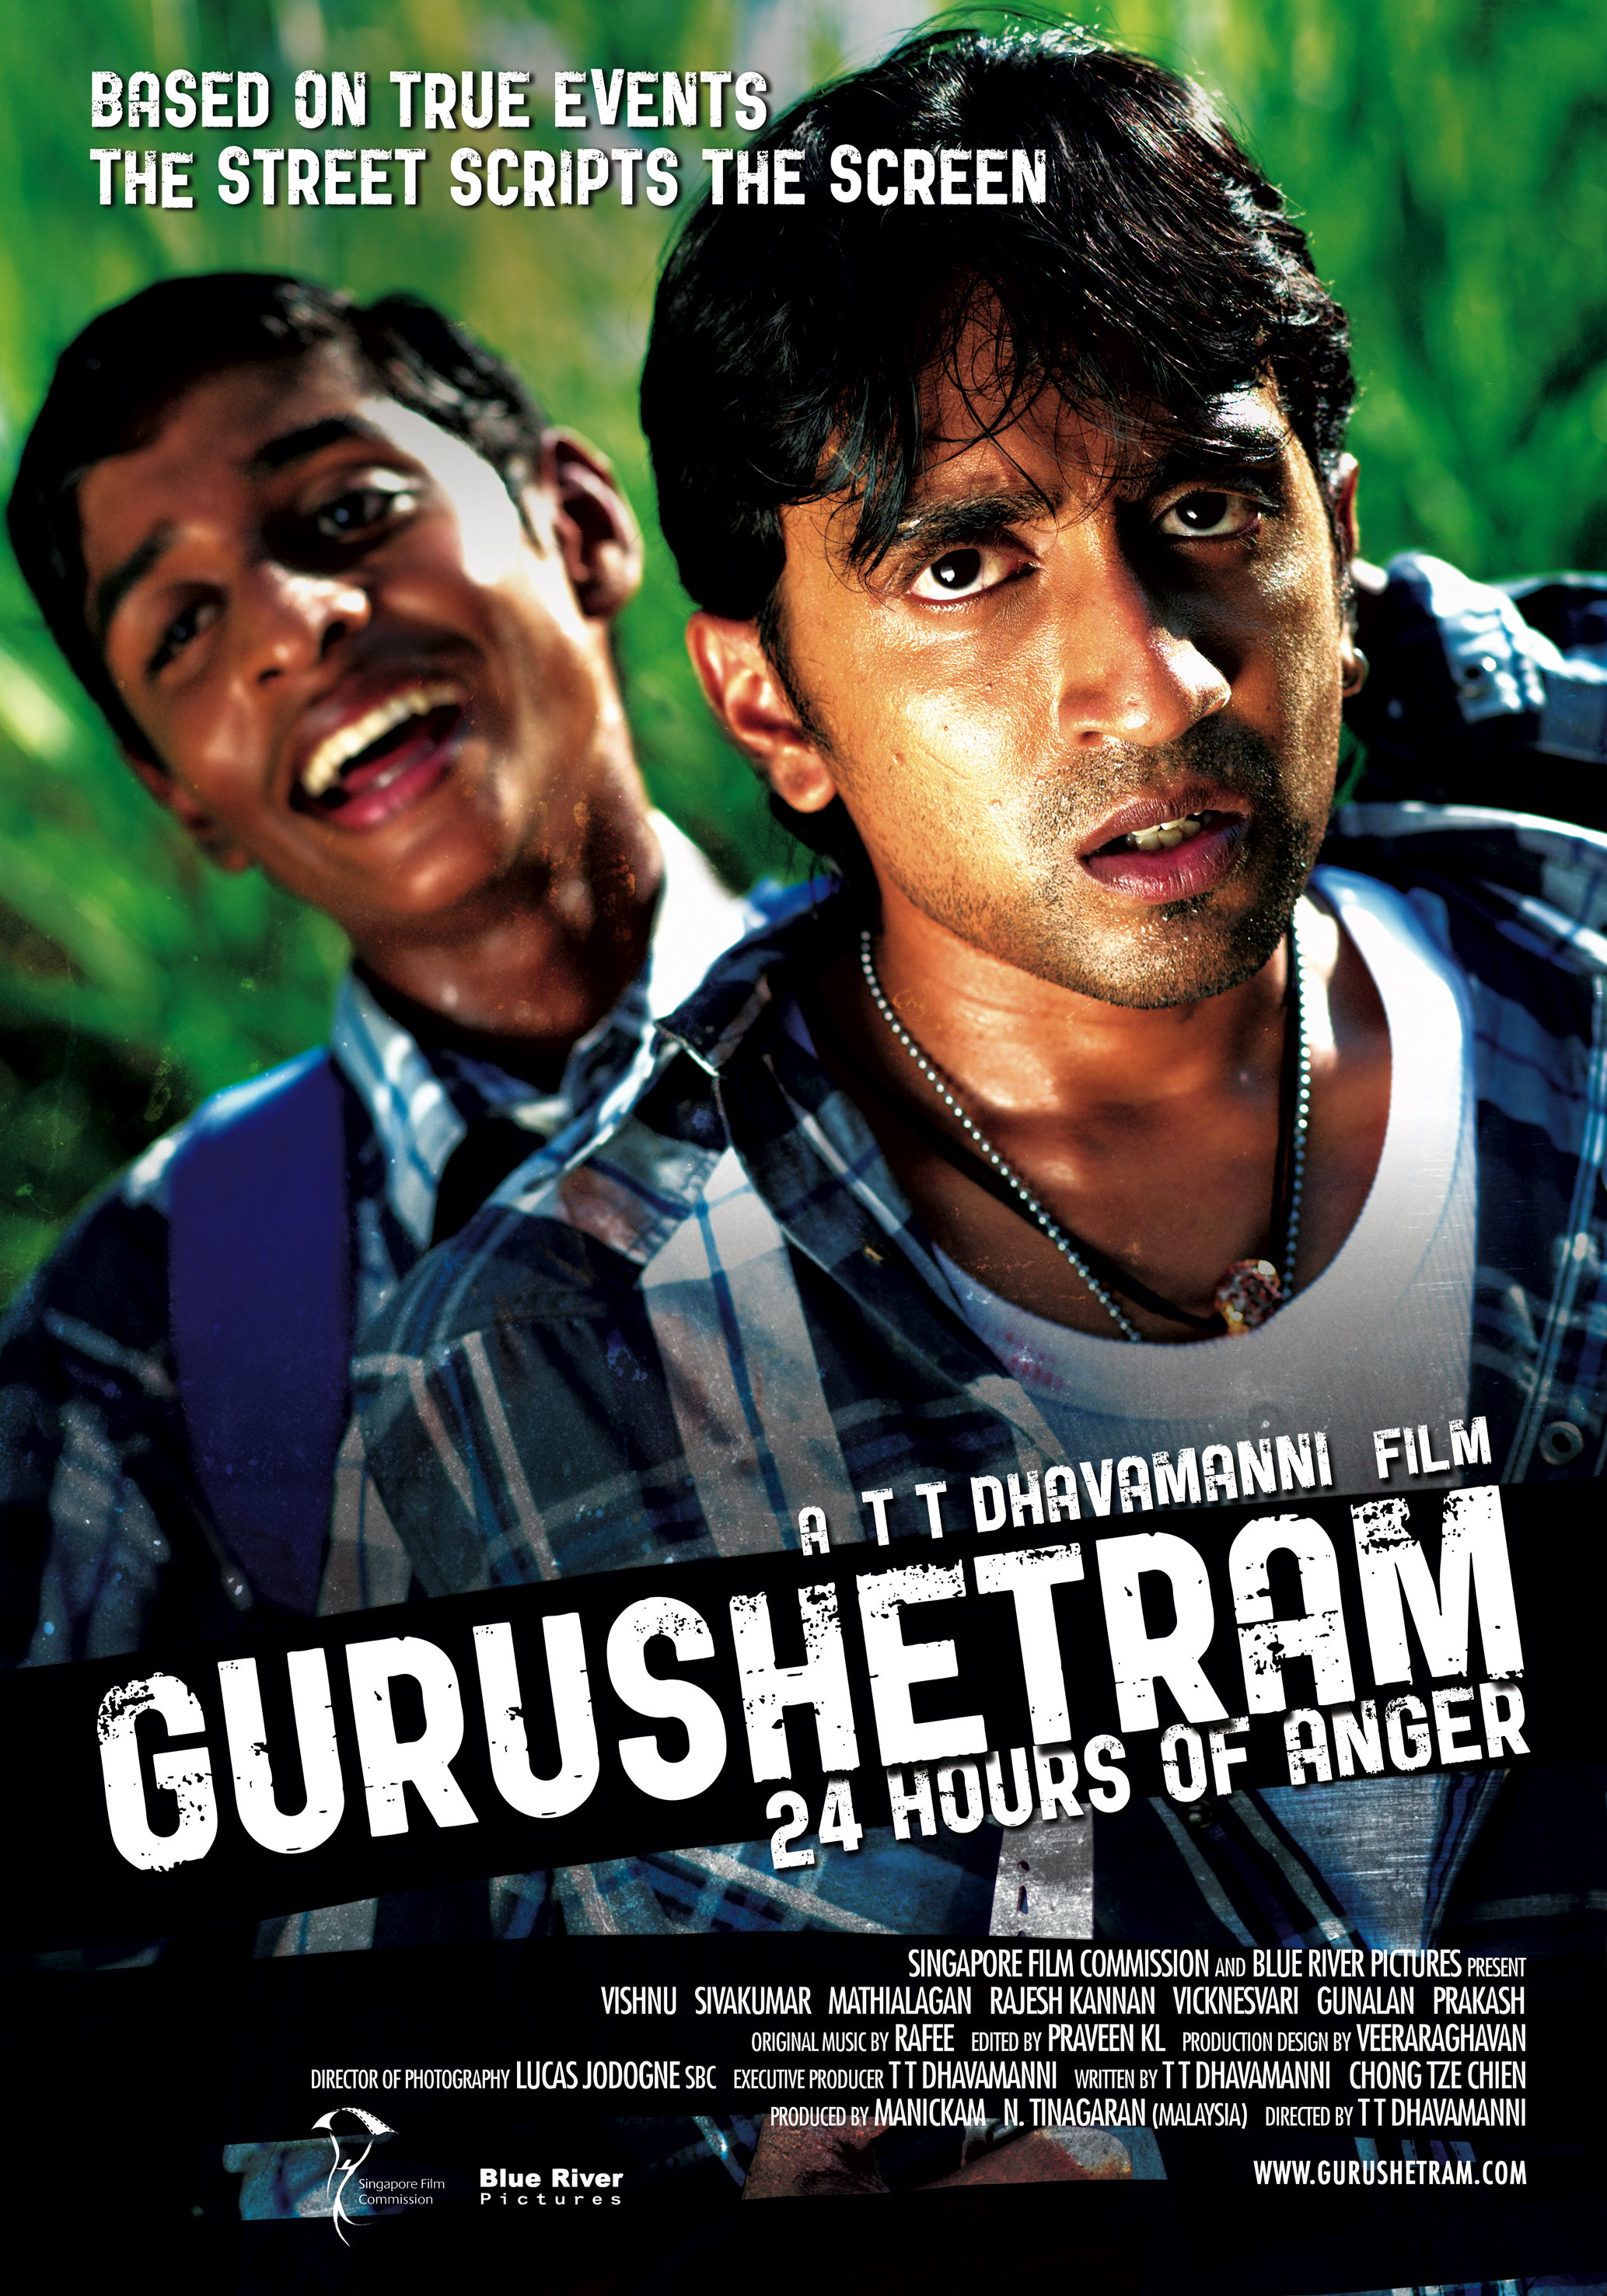 Gurushetram: 24 Hours of Anger (2010) Screenshot 1 